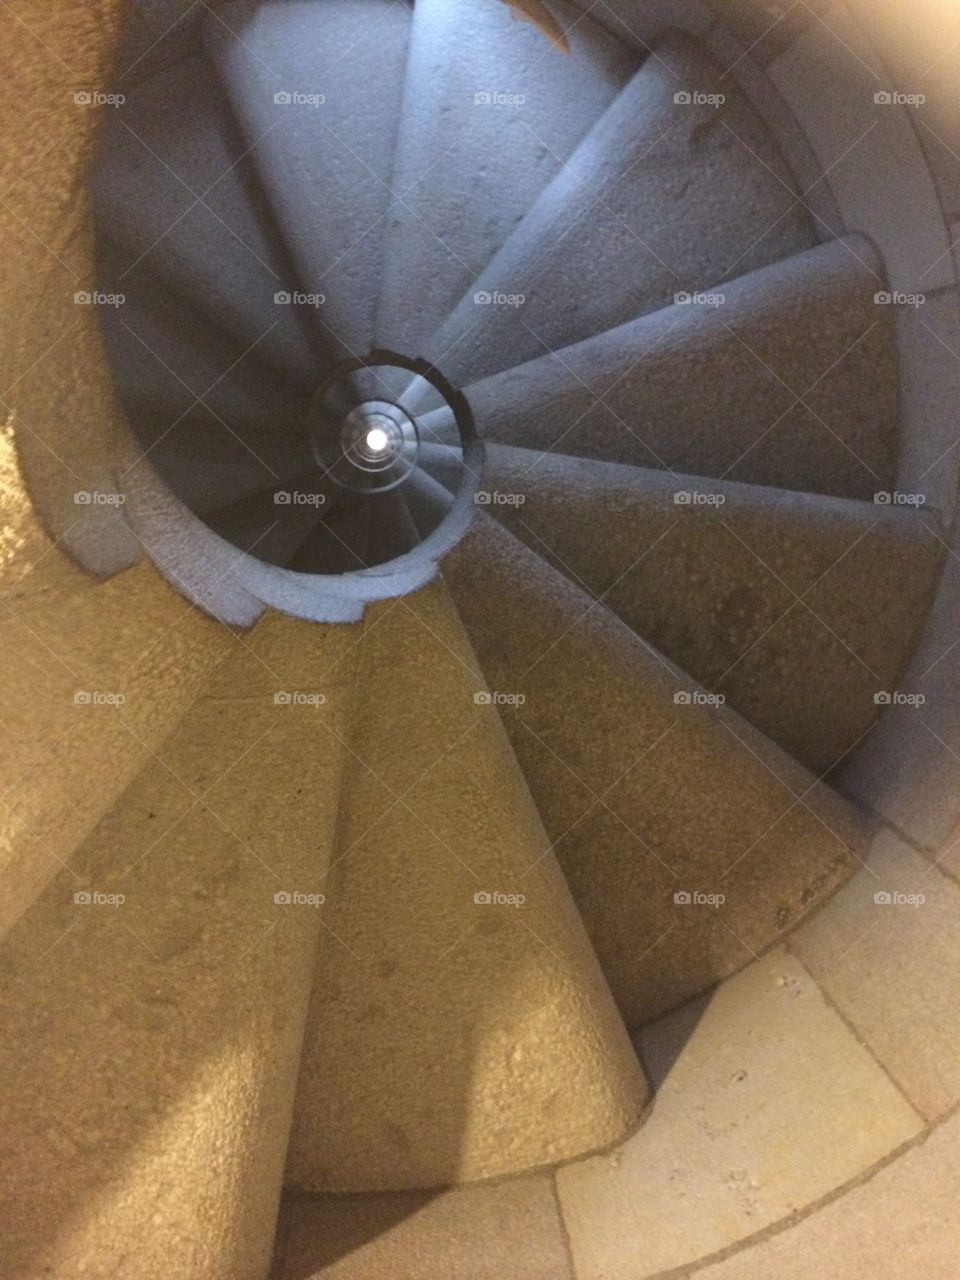 Shell. Stairwell in Gaudi's La Sagrada Familia